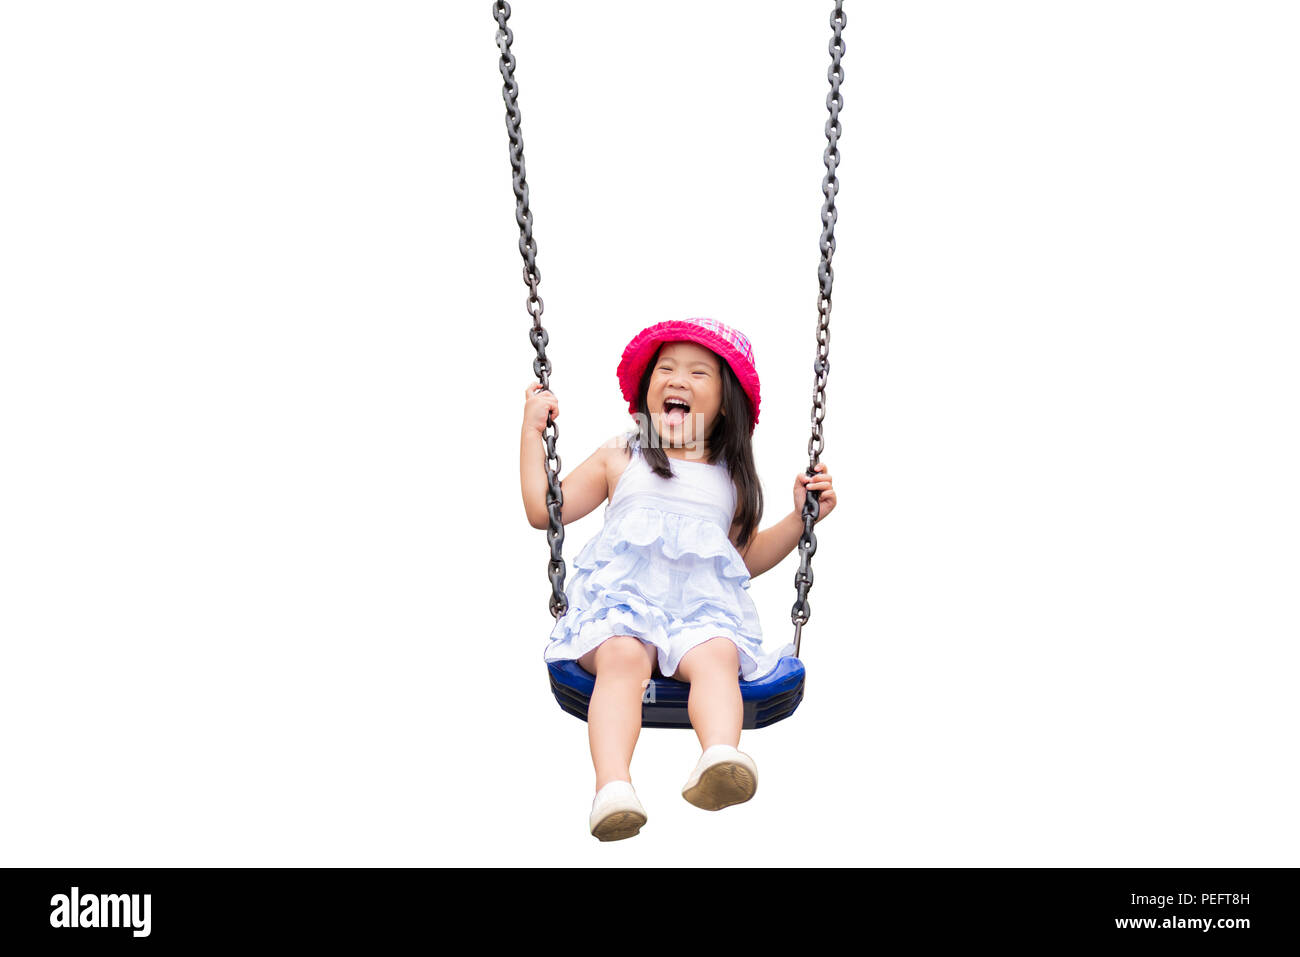 Cute little girl having fun with swing dans le parc.aire de jeux pour enfants. isolé sur fond blanc. Banque D'Images